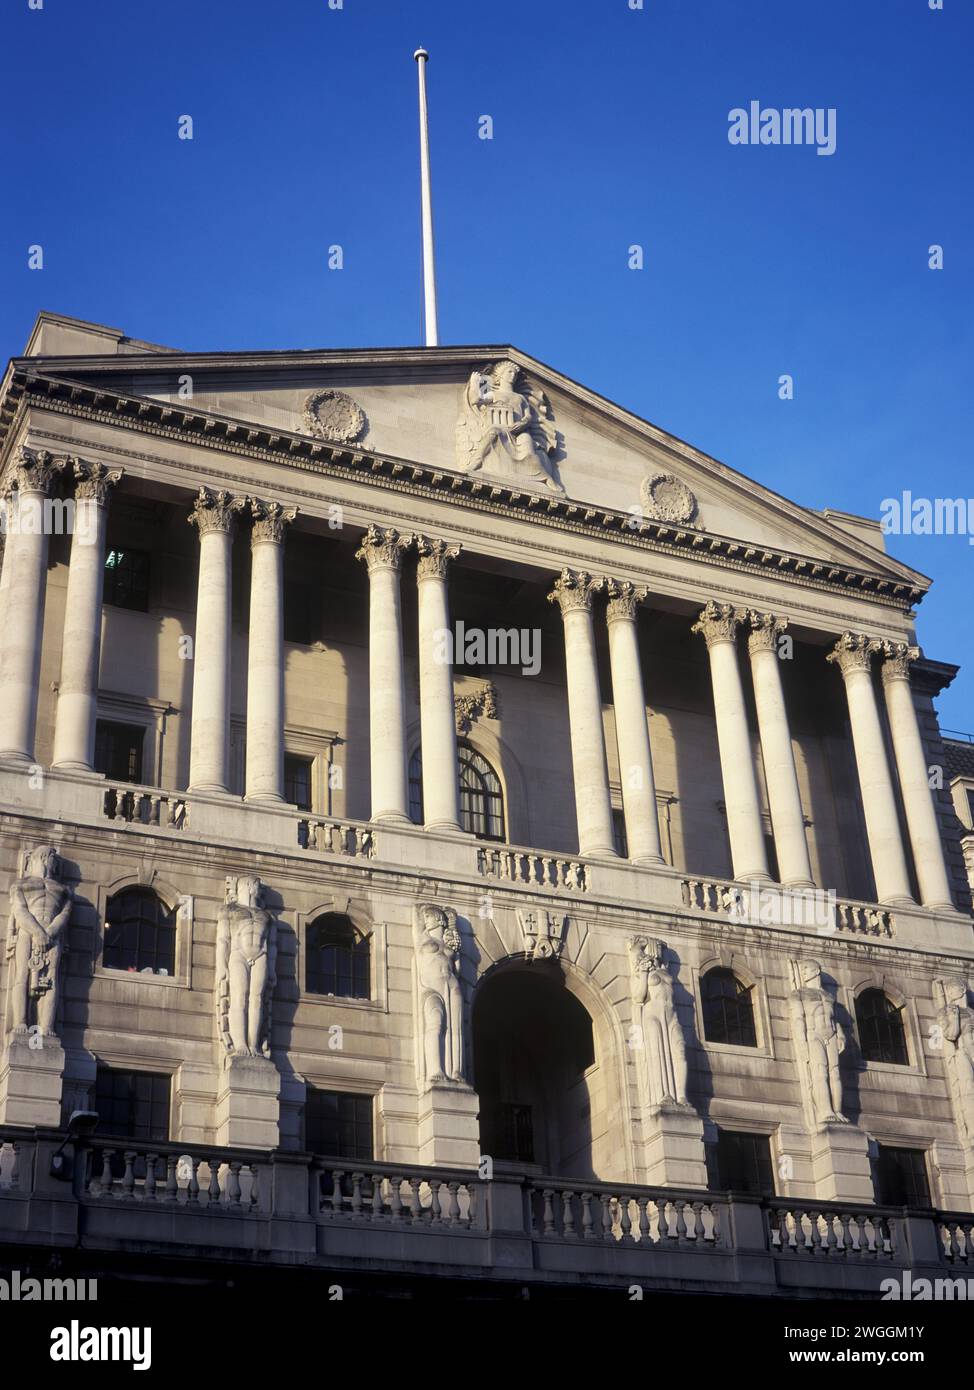 Großbritannien, London, die Fassade der 1694 gegründeten Bank of England, die zwischen den Kriegen wieder aufgebaut wurde. Stockfoto